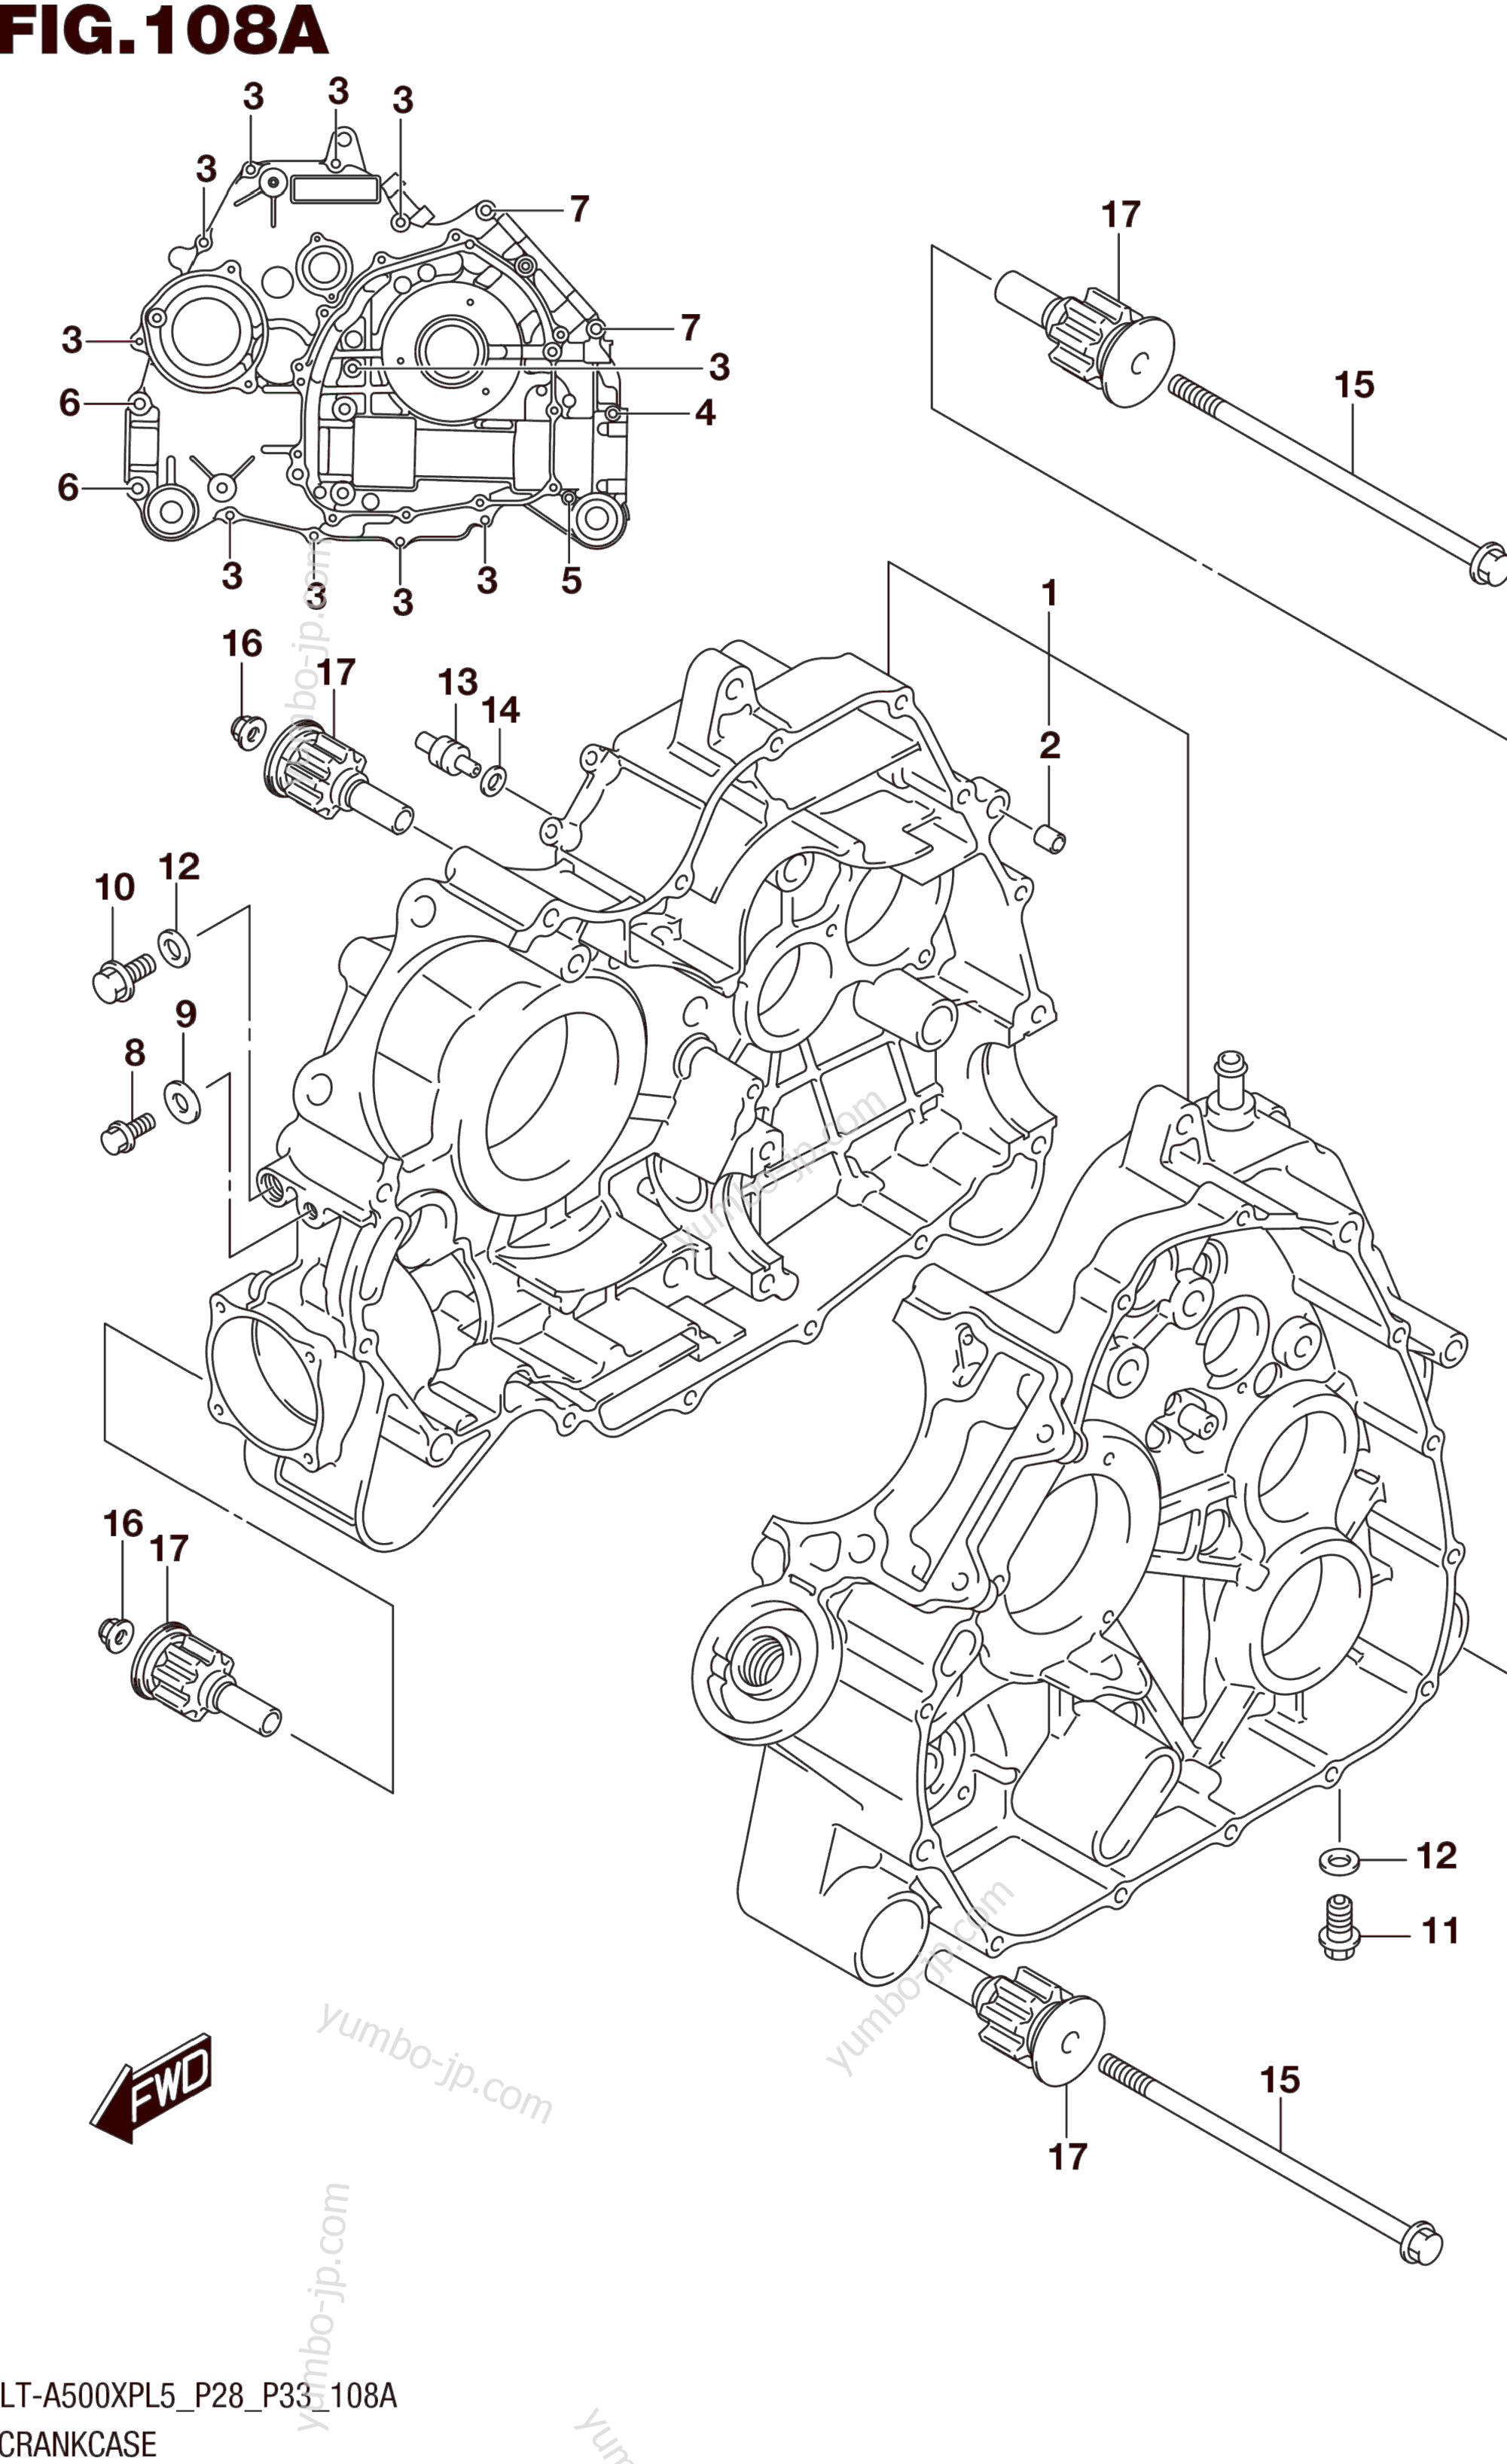 CRANKCASE for ATVs SUZUKI LT-A500XPZ 2015 year